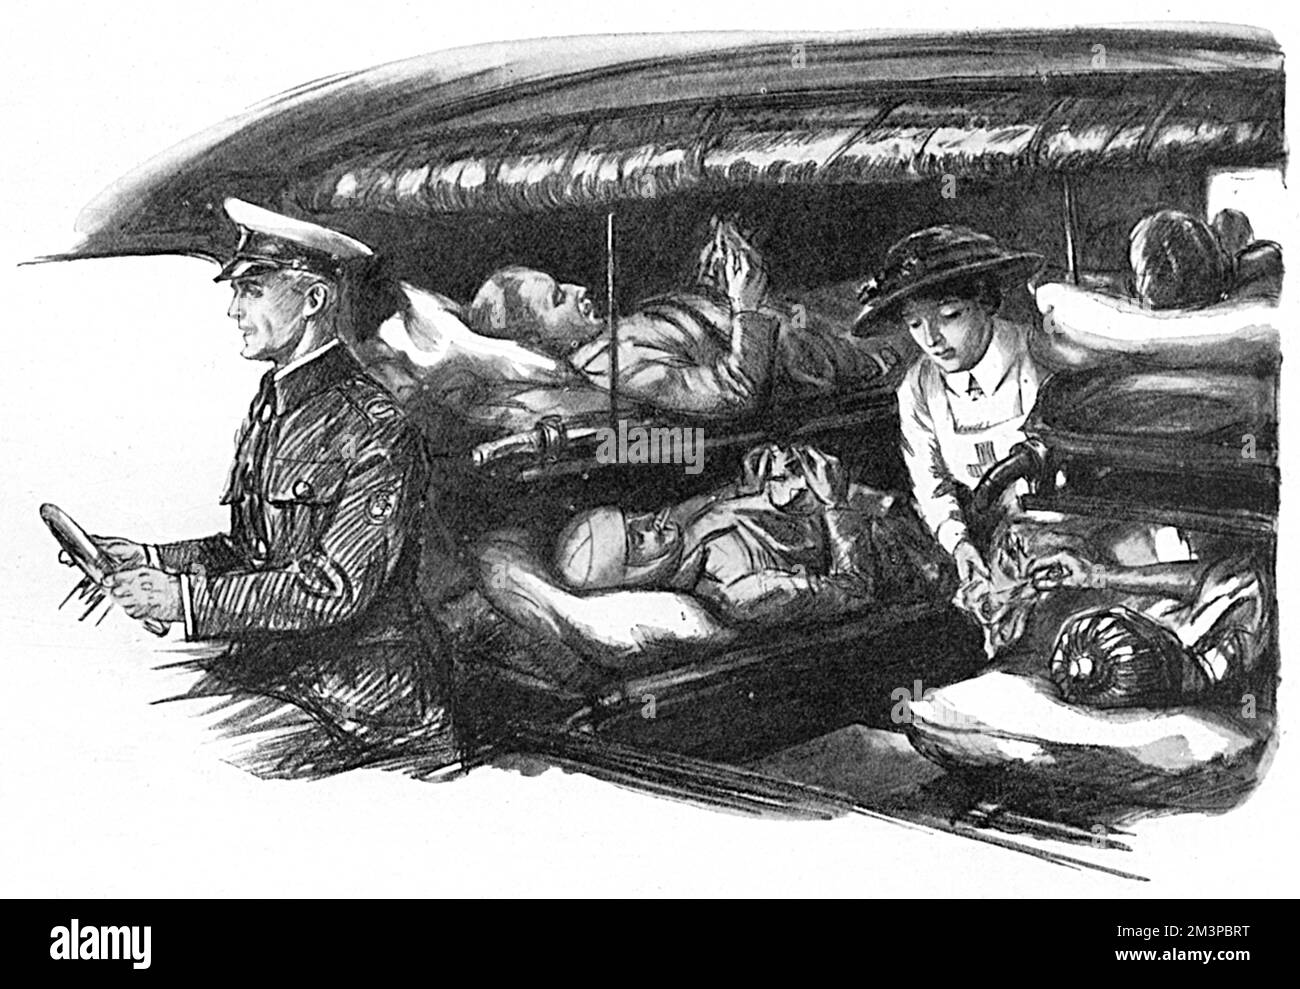 I soldati feriti sulle barelle (valigie per bambini), arrivati a Londra tramite un treno ospedaliero, sono raffigurati all'interno di un'ambulanza che offre banane e un pacchetto di sigarette da un'infermiera che si occupa. Durante la prima guerra mondiale, i treni per ambulanze arrivarono tutti i giorni alla stazione termini della South Coast e gli occupanti furono distribuiti ai numerosi ospedali militari di Londra. Oltre a incontrare treni a Charing Cross, Waterloo, Clapham Junction e altrove, ha intrapreso casi di rimozione da un ospedale all'altro e a case convalescenti nel paese. Data: 1916 Foto Stock